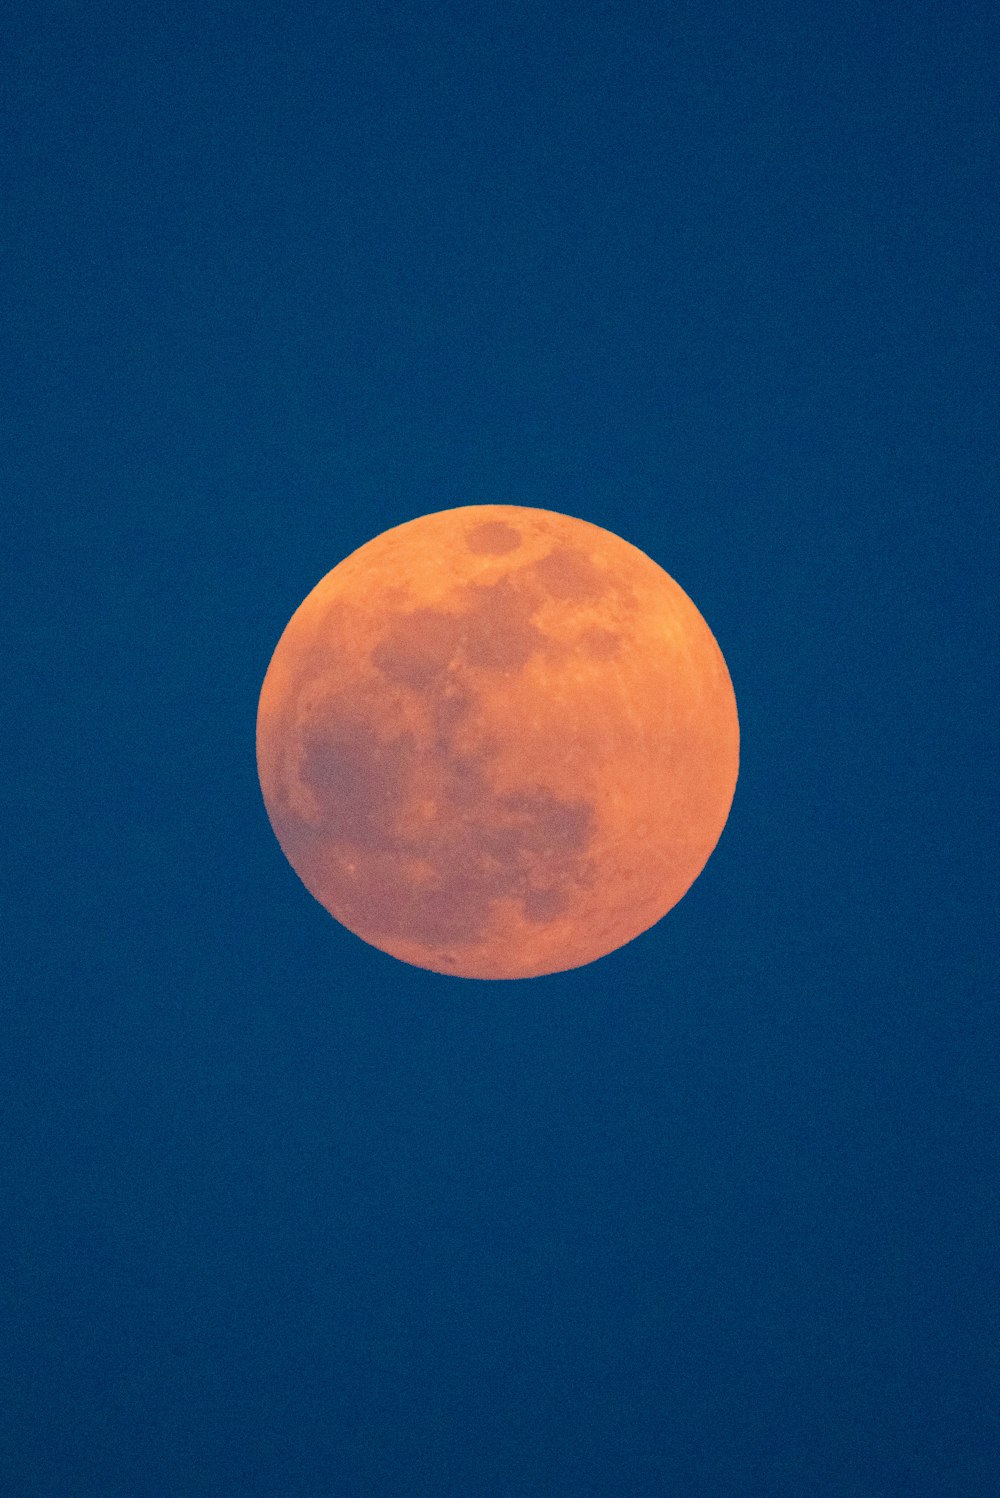 foto da lua vermelha sangrenta